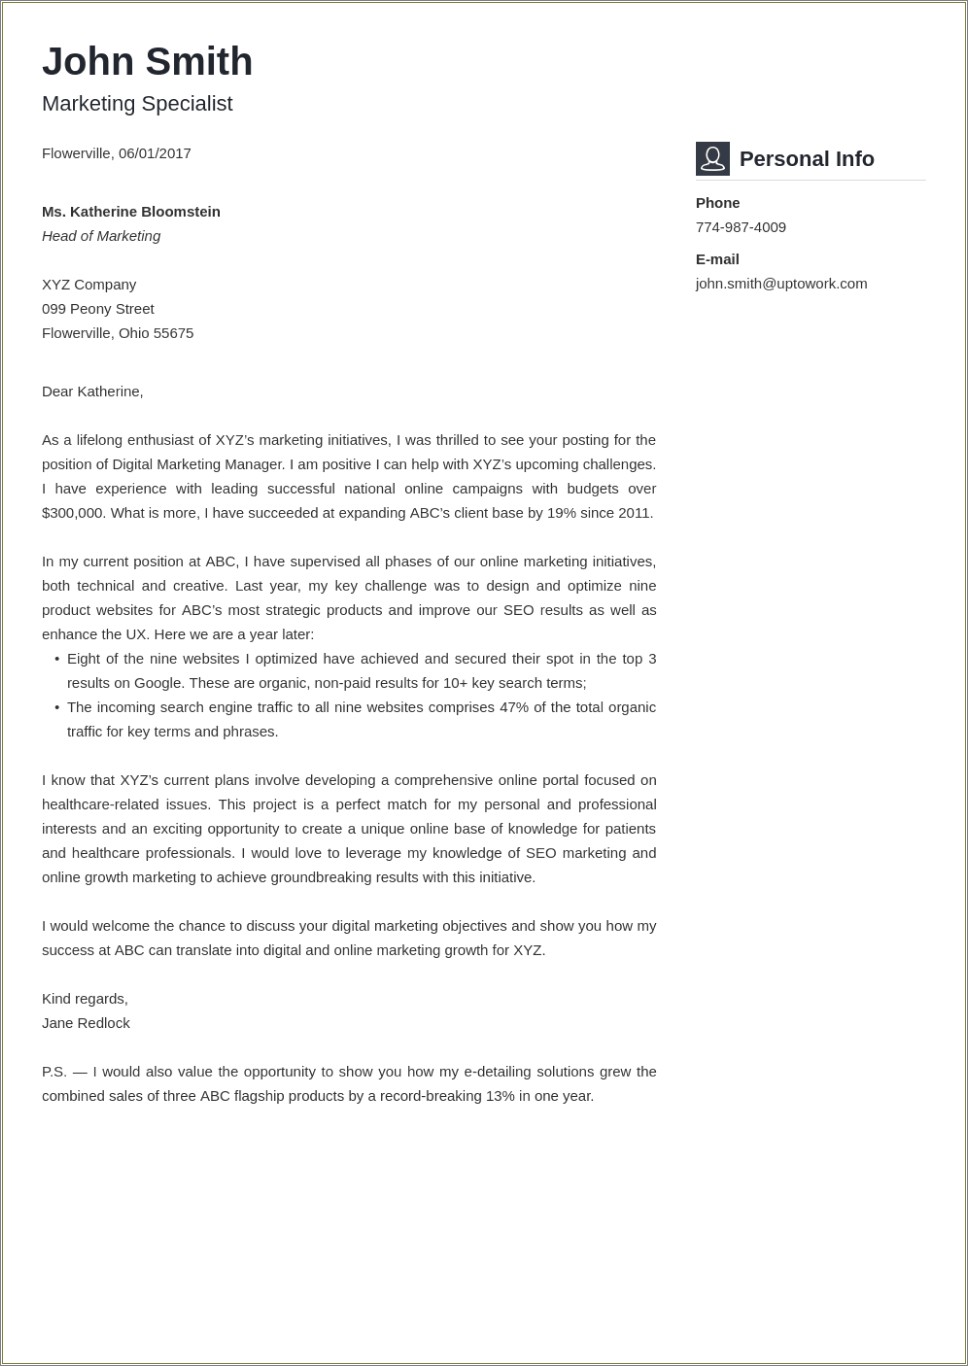 Sample Cover Letter Format For Resume